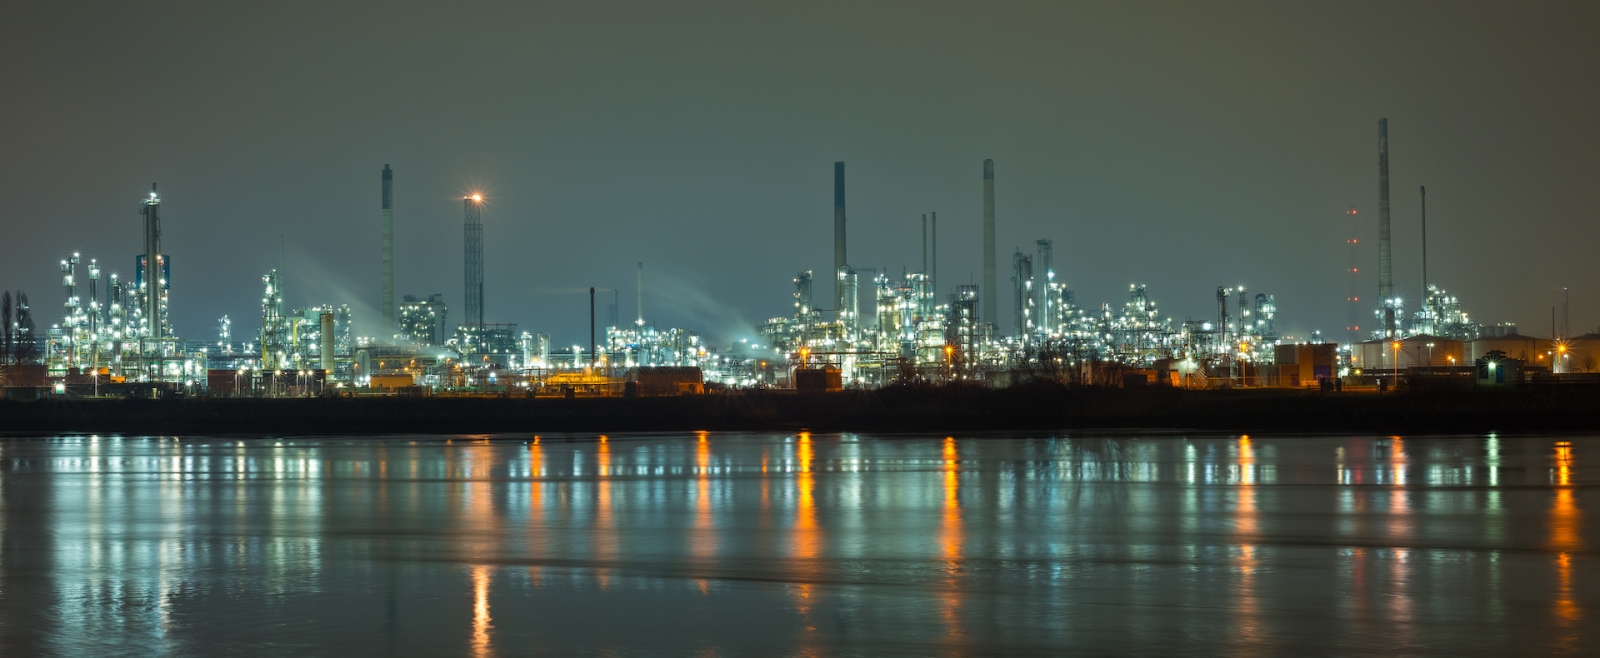 Панорама нефтехимической промышленности в Роттердаме, Нидерланды ночью